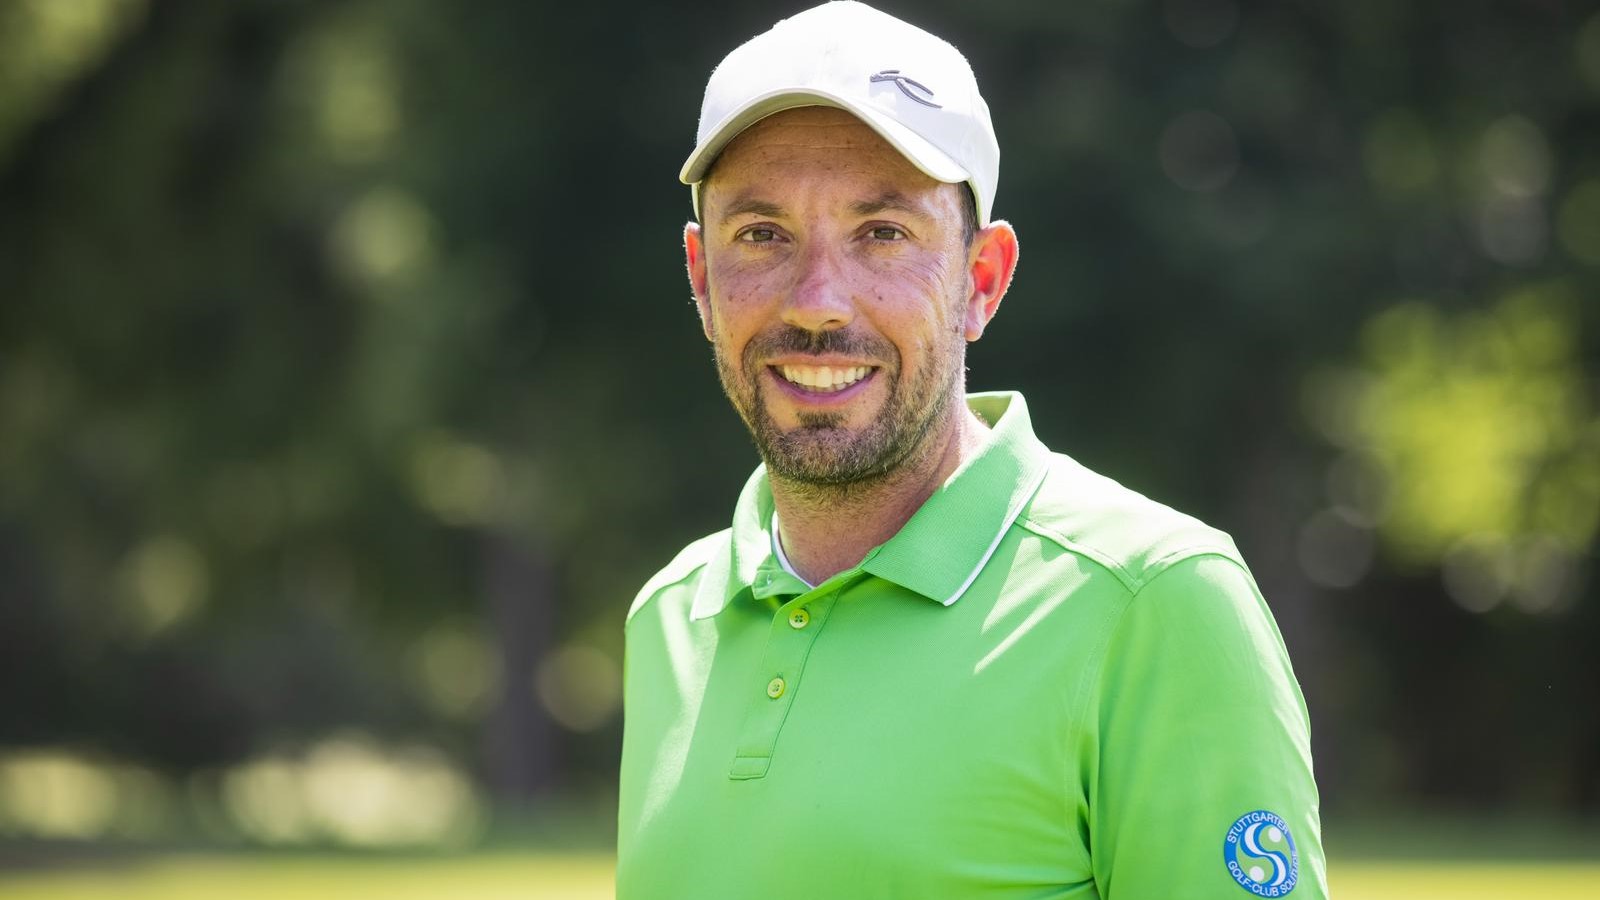 Heiko Burkhard, PGA Teacher of the Year, gibt auf golf.de fünf Tipps zum Umgang mit schlechten Schlägen.